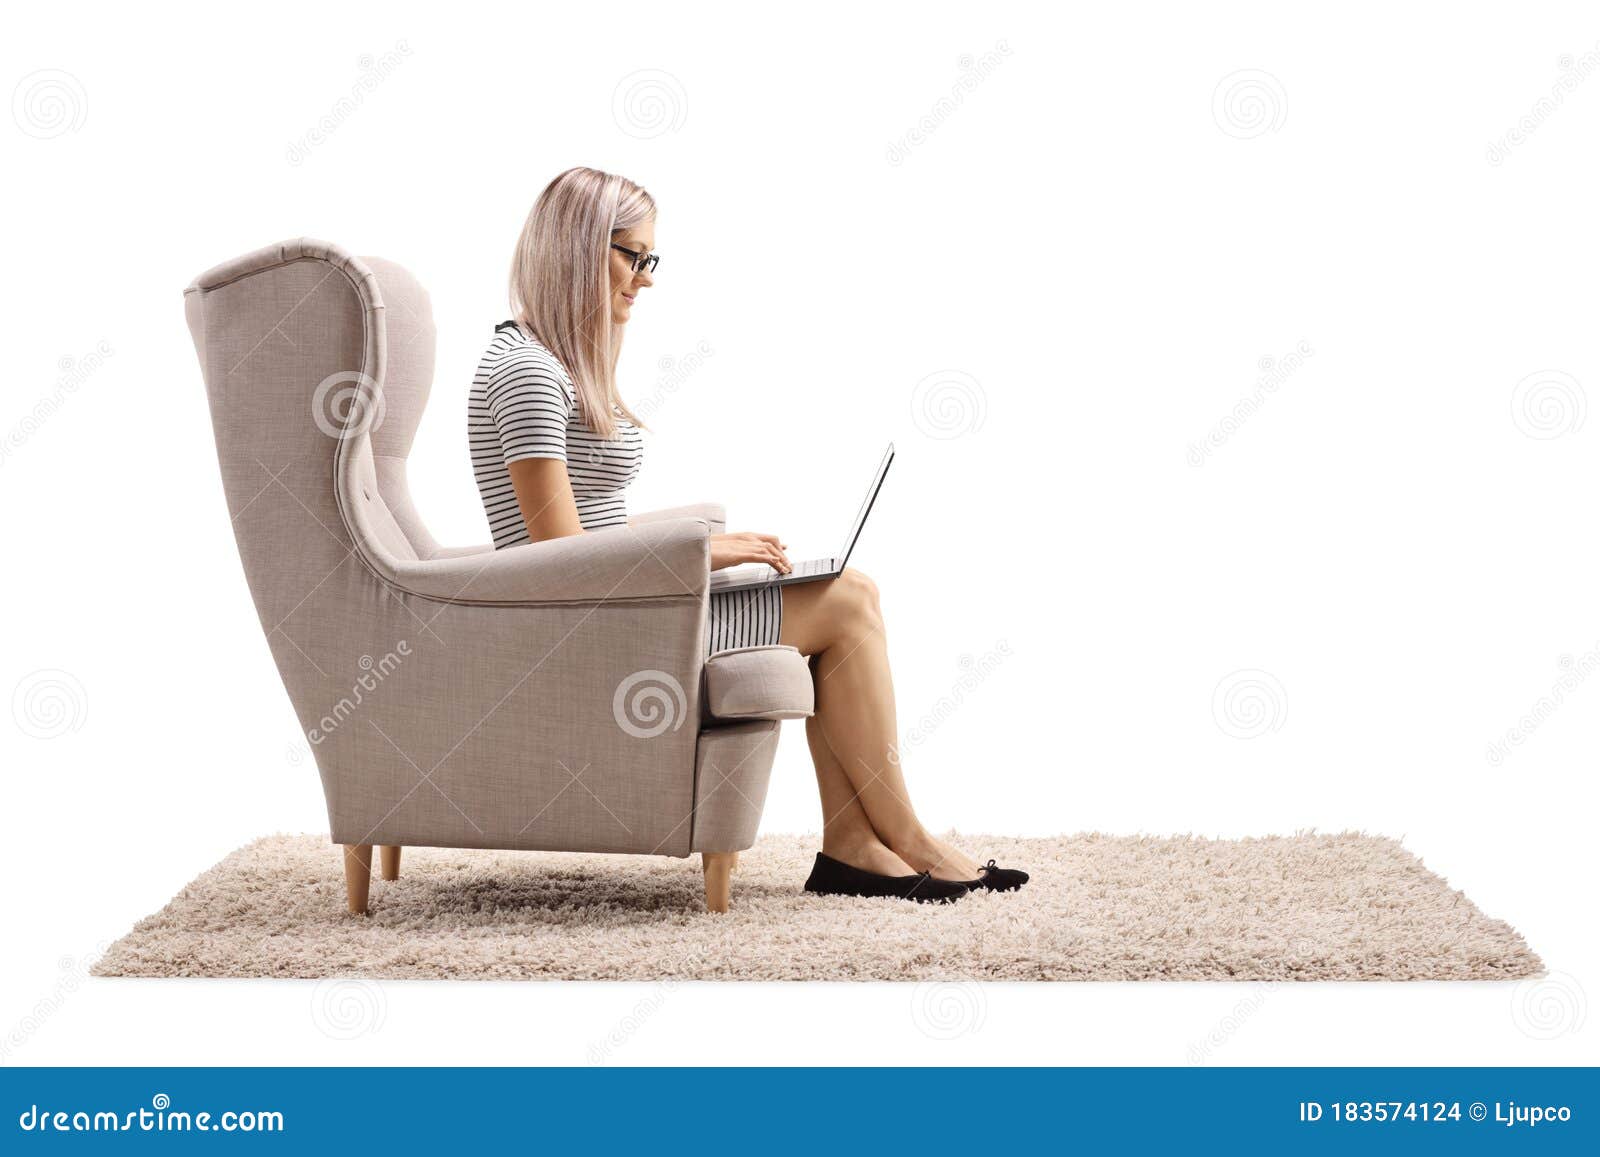 А я посижу напротив в кресле песня. Женщина в кресле с ноутбуком. Женщина в кресле, задумалась. Девушка сидит в кресле с ноутбуком. Сидит в кресле боком.